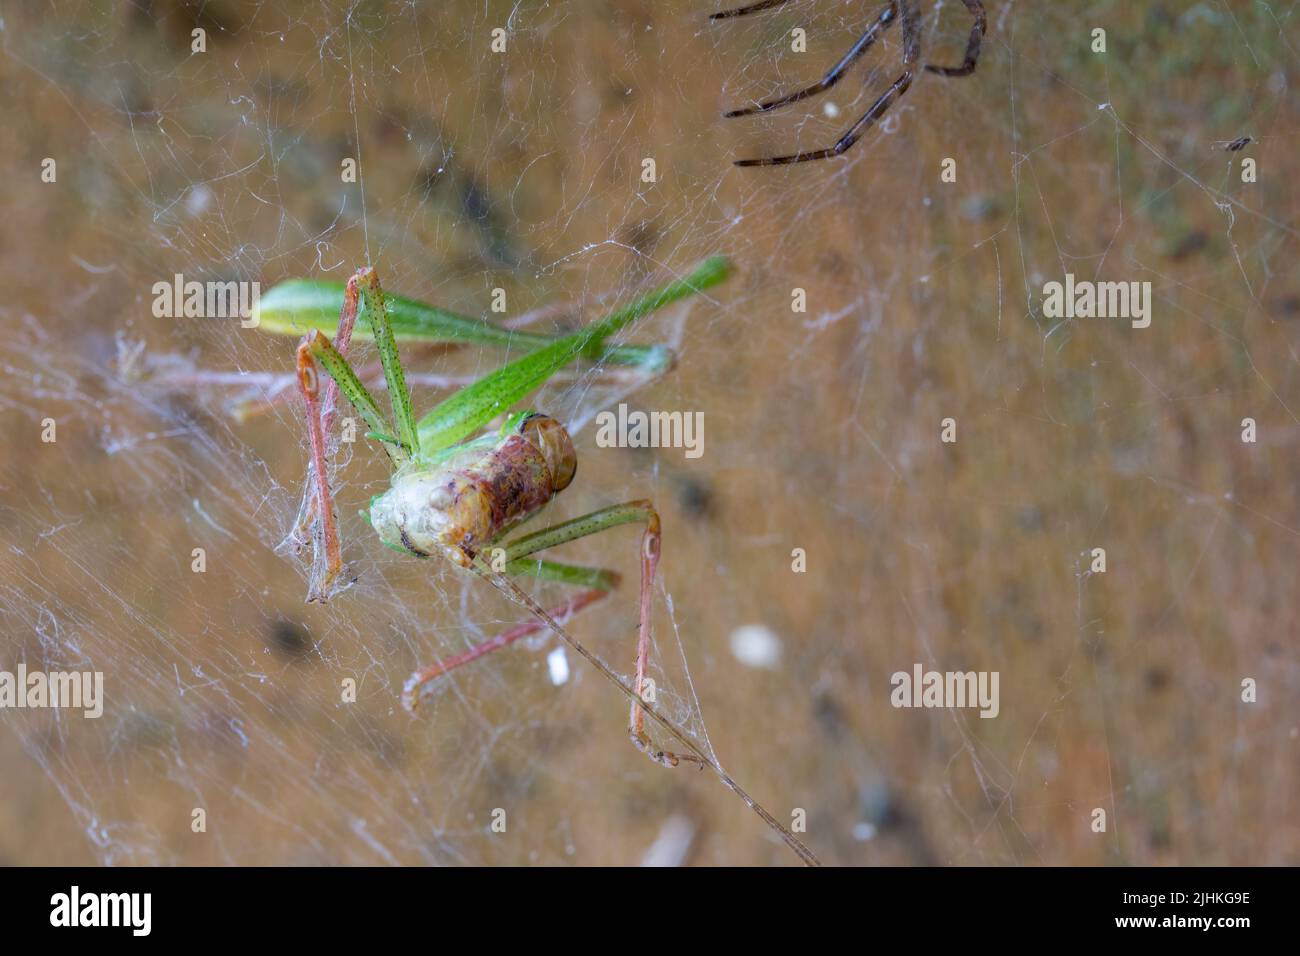 Grasshoper verde en tela de araña en la puerta de jardín moteado cricket arbusto (leptophyes punctatissima) puntos negros minúsculos que cubren el cuerpo, tiene largas piernas espinosas Foto de stock